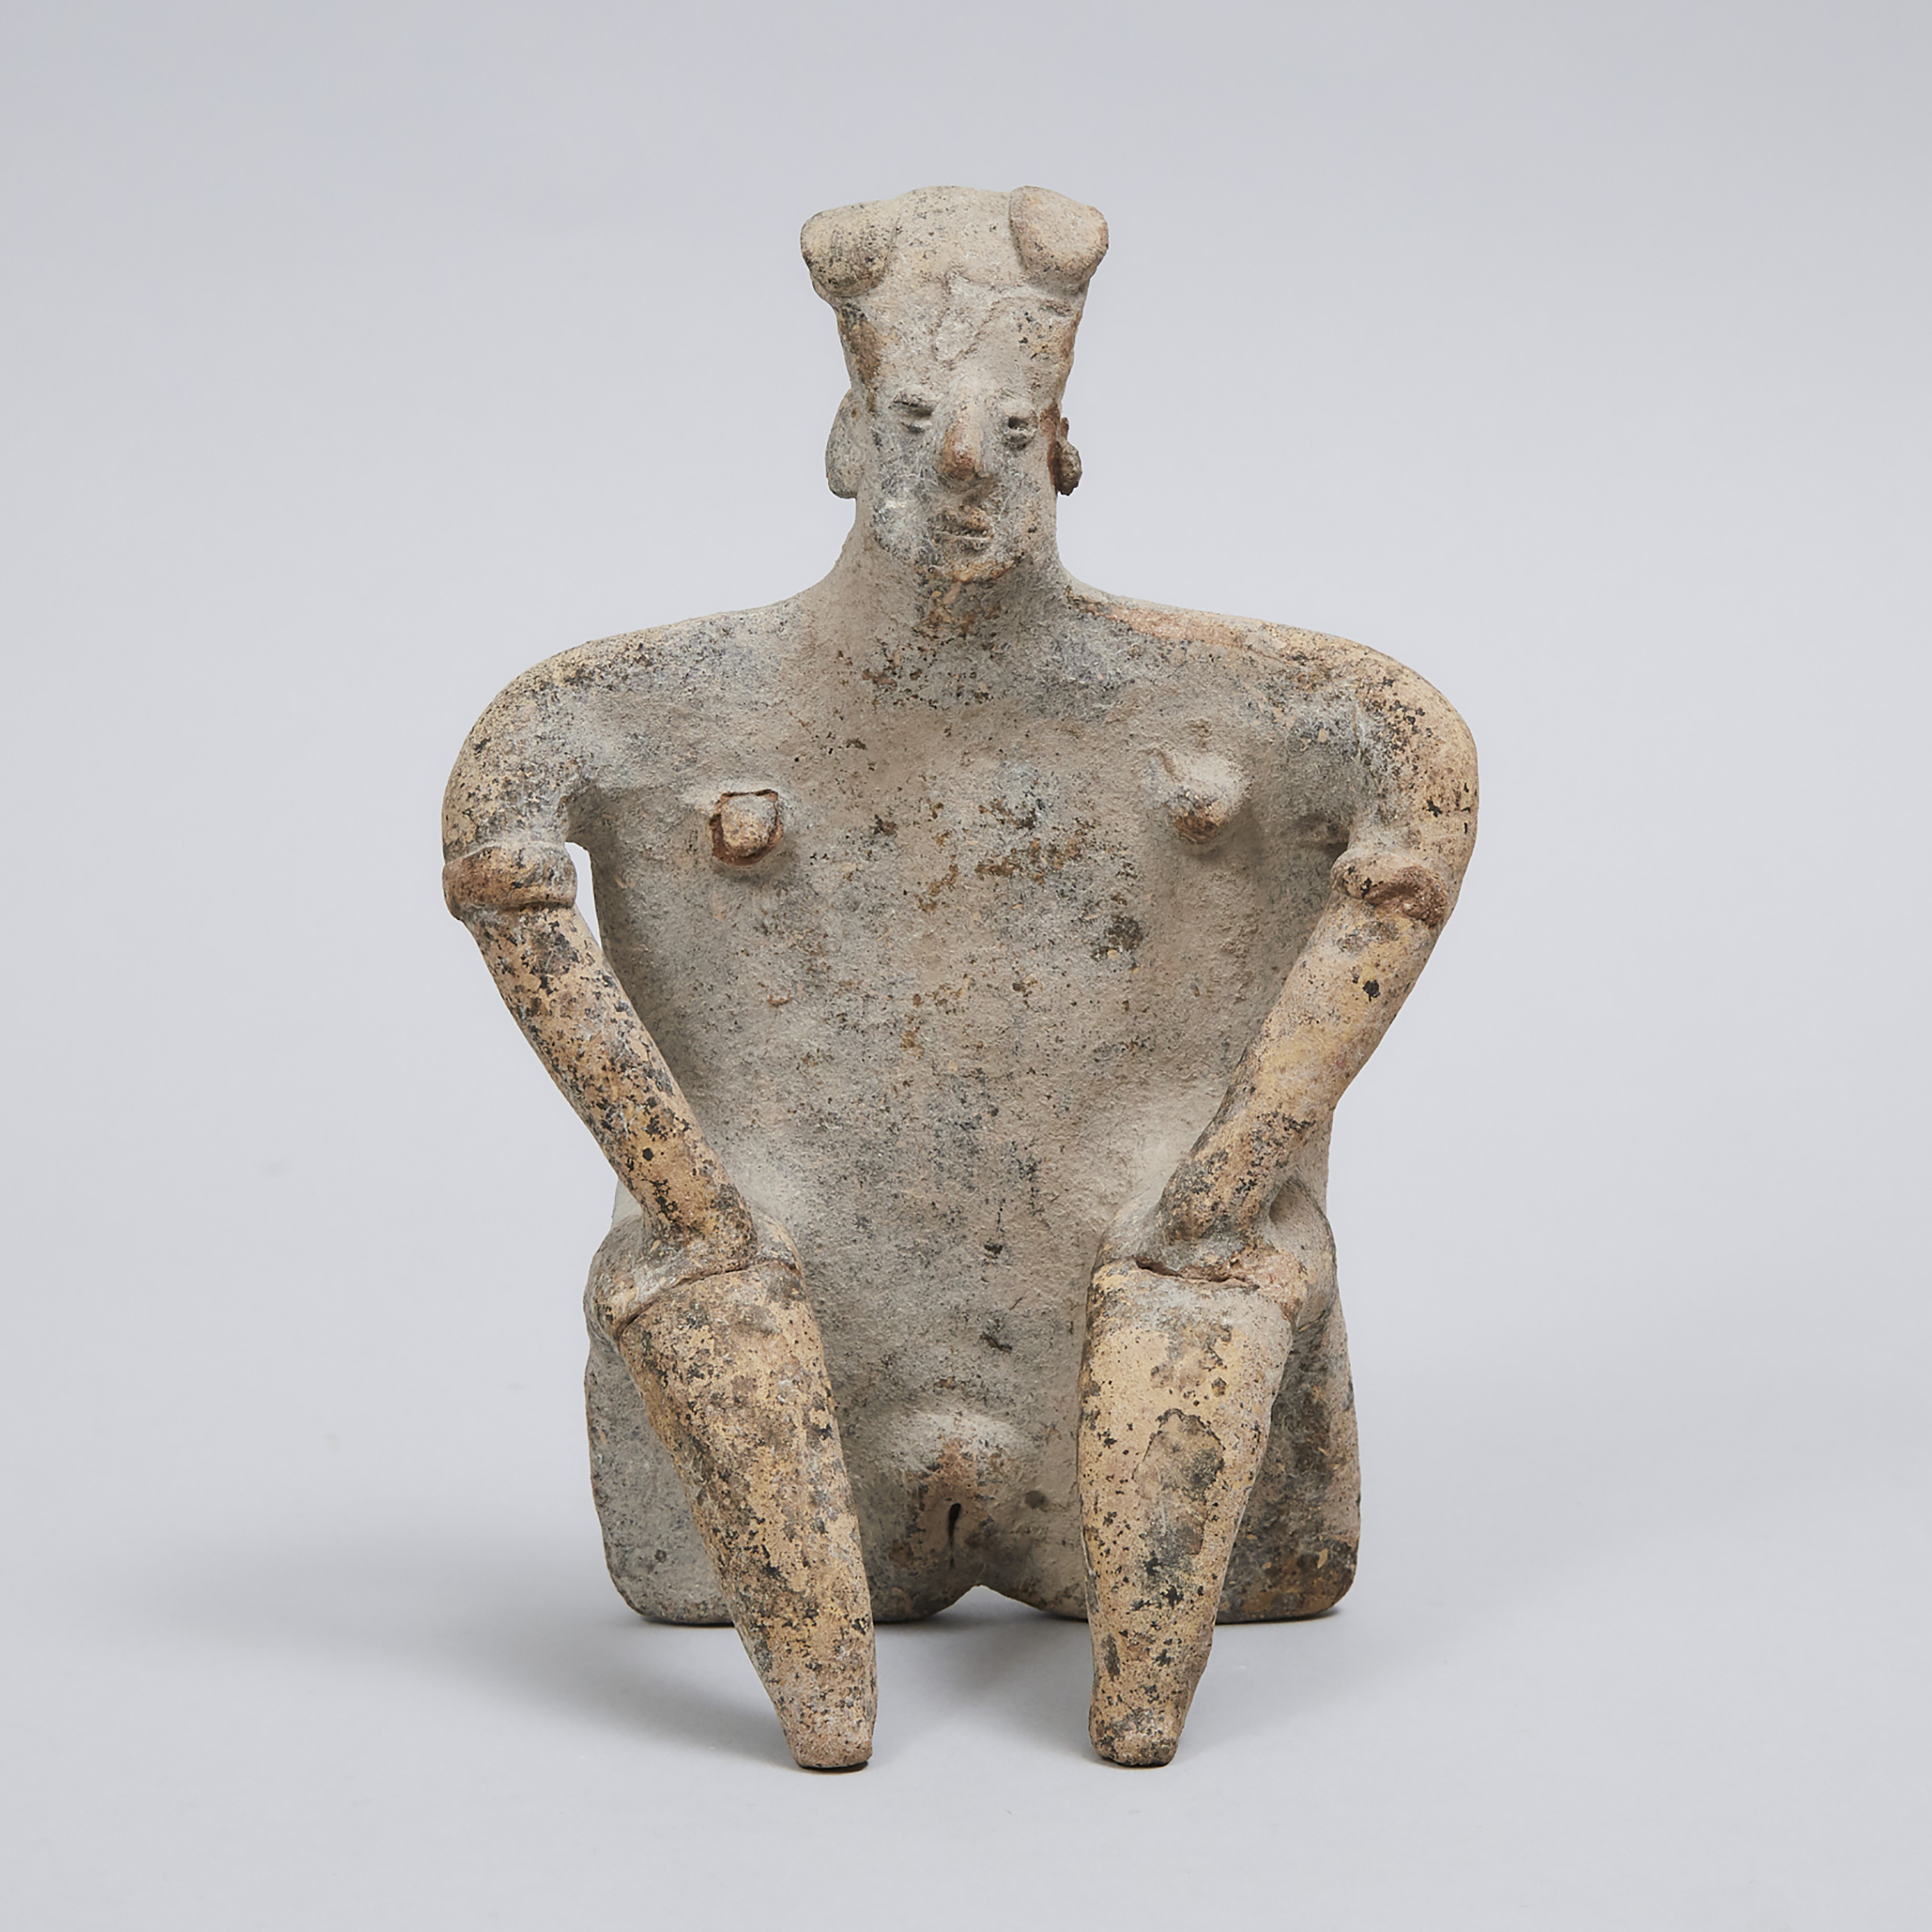 Jalisco/Colima Pottery Fertility Figure, West Mexico, 200 B.C. - 200 A.D.